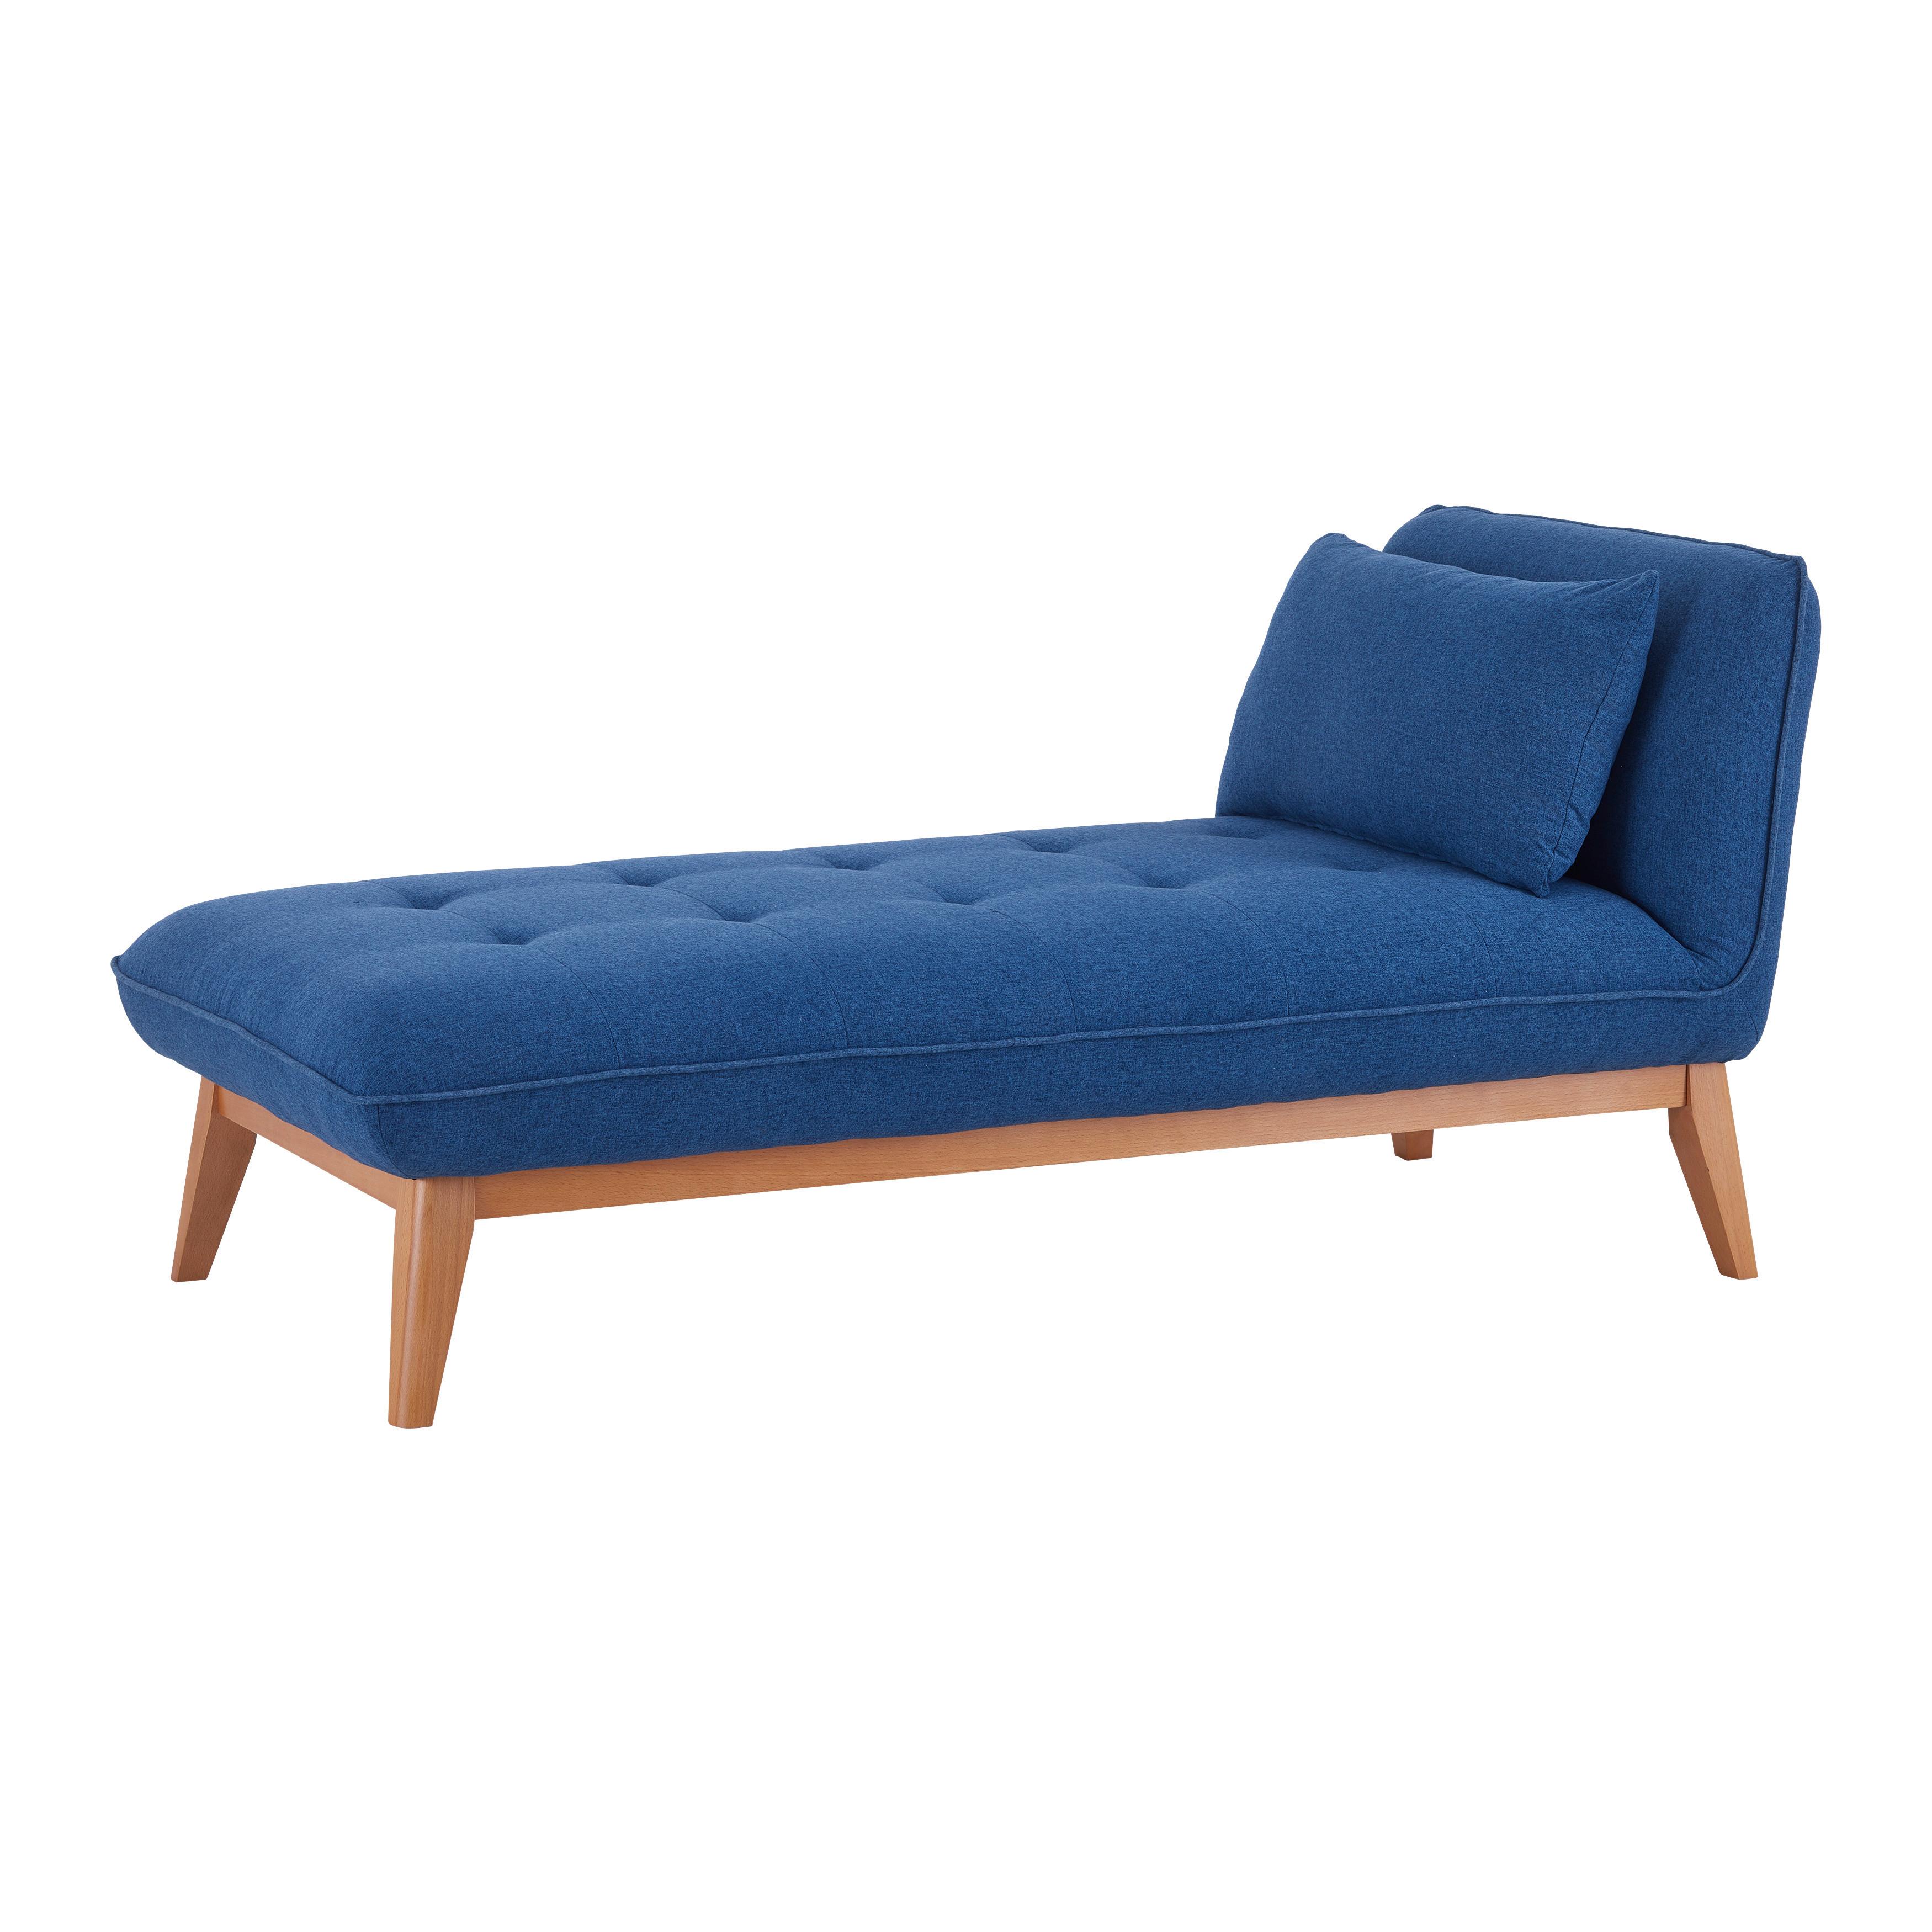 Relaxační Postel Liza Modrá - modrá, Moderní, dřevo/textil (129/85/78cm) - P & B